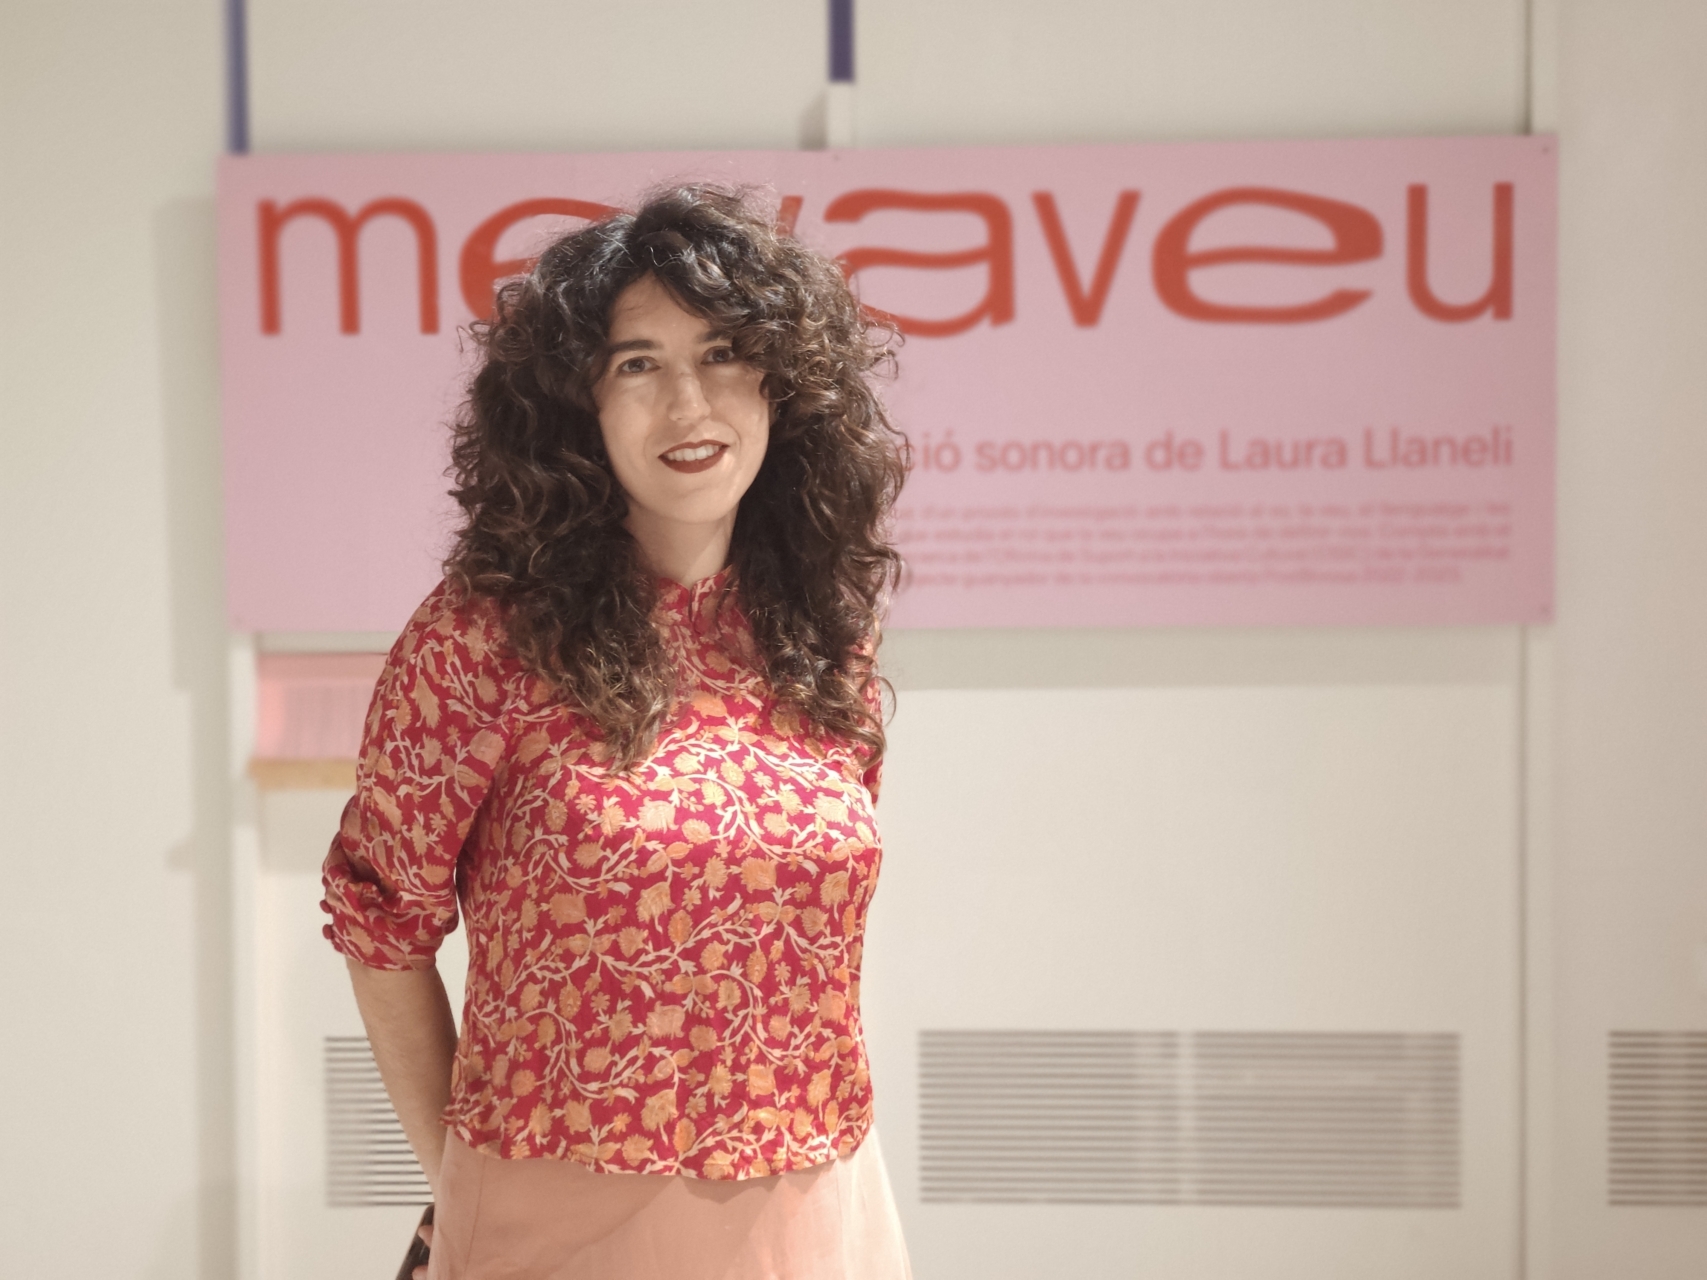 imatge de perfil Laura Llaneli projecte Mevaveu convocatòria PostBrossa